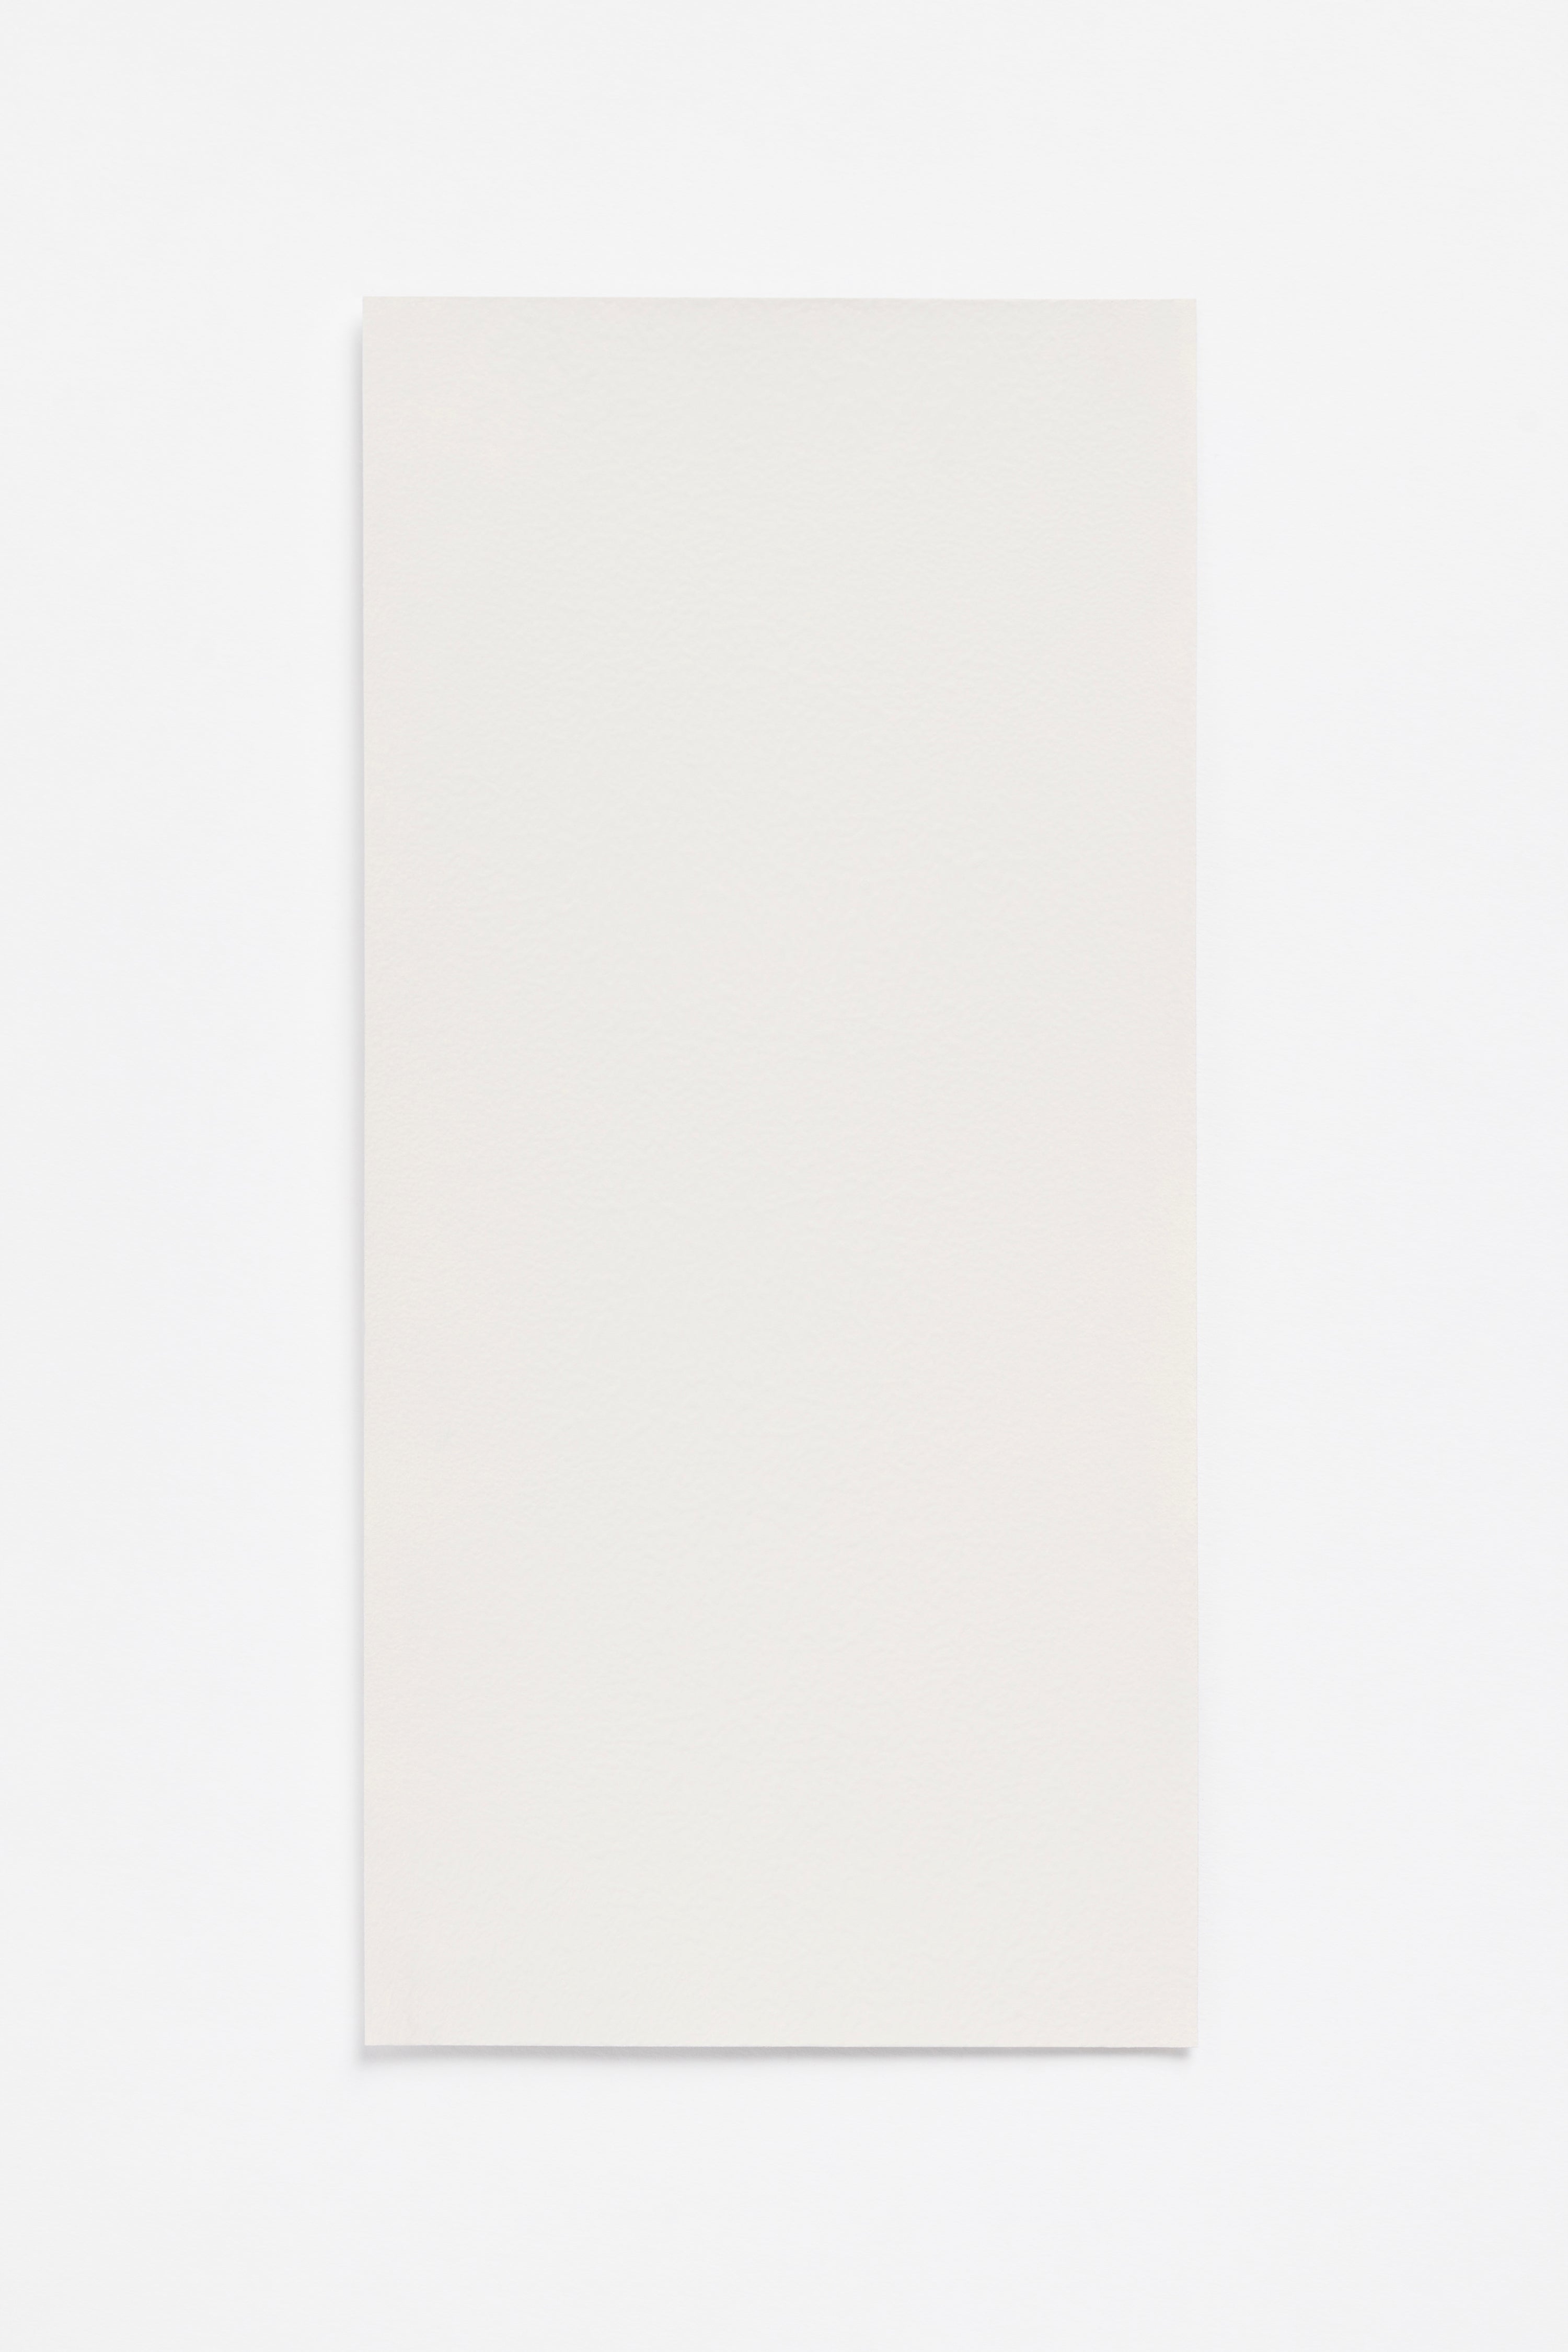 Linen  — a paint colour developed by Yvonne Koné for Blēo